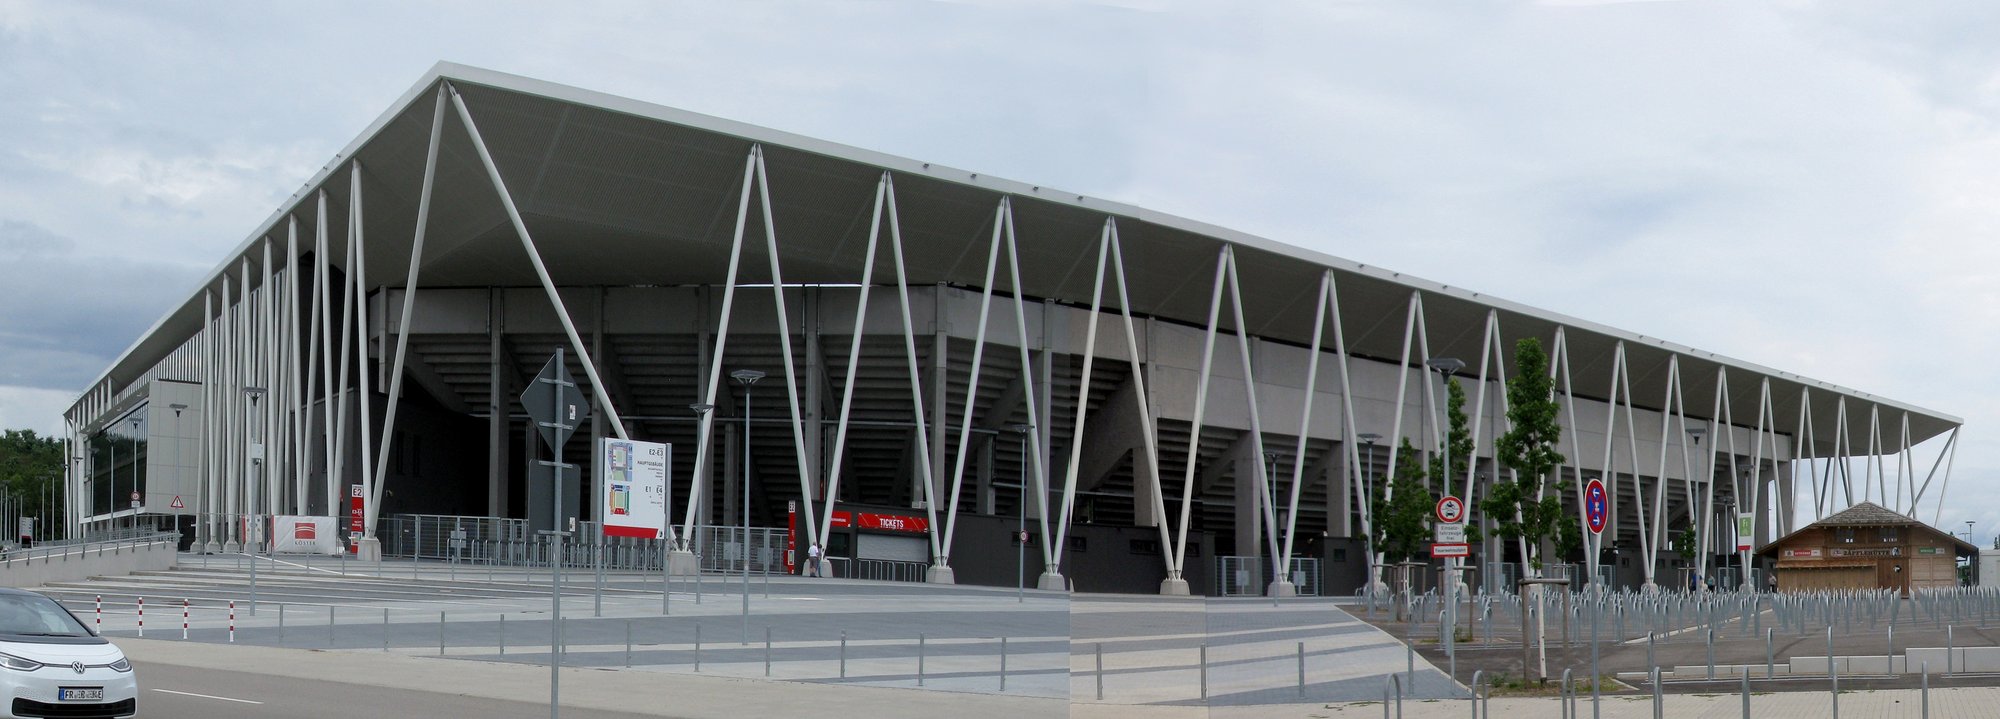 Europa-Park Stadion, Freiburg